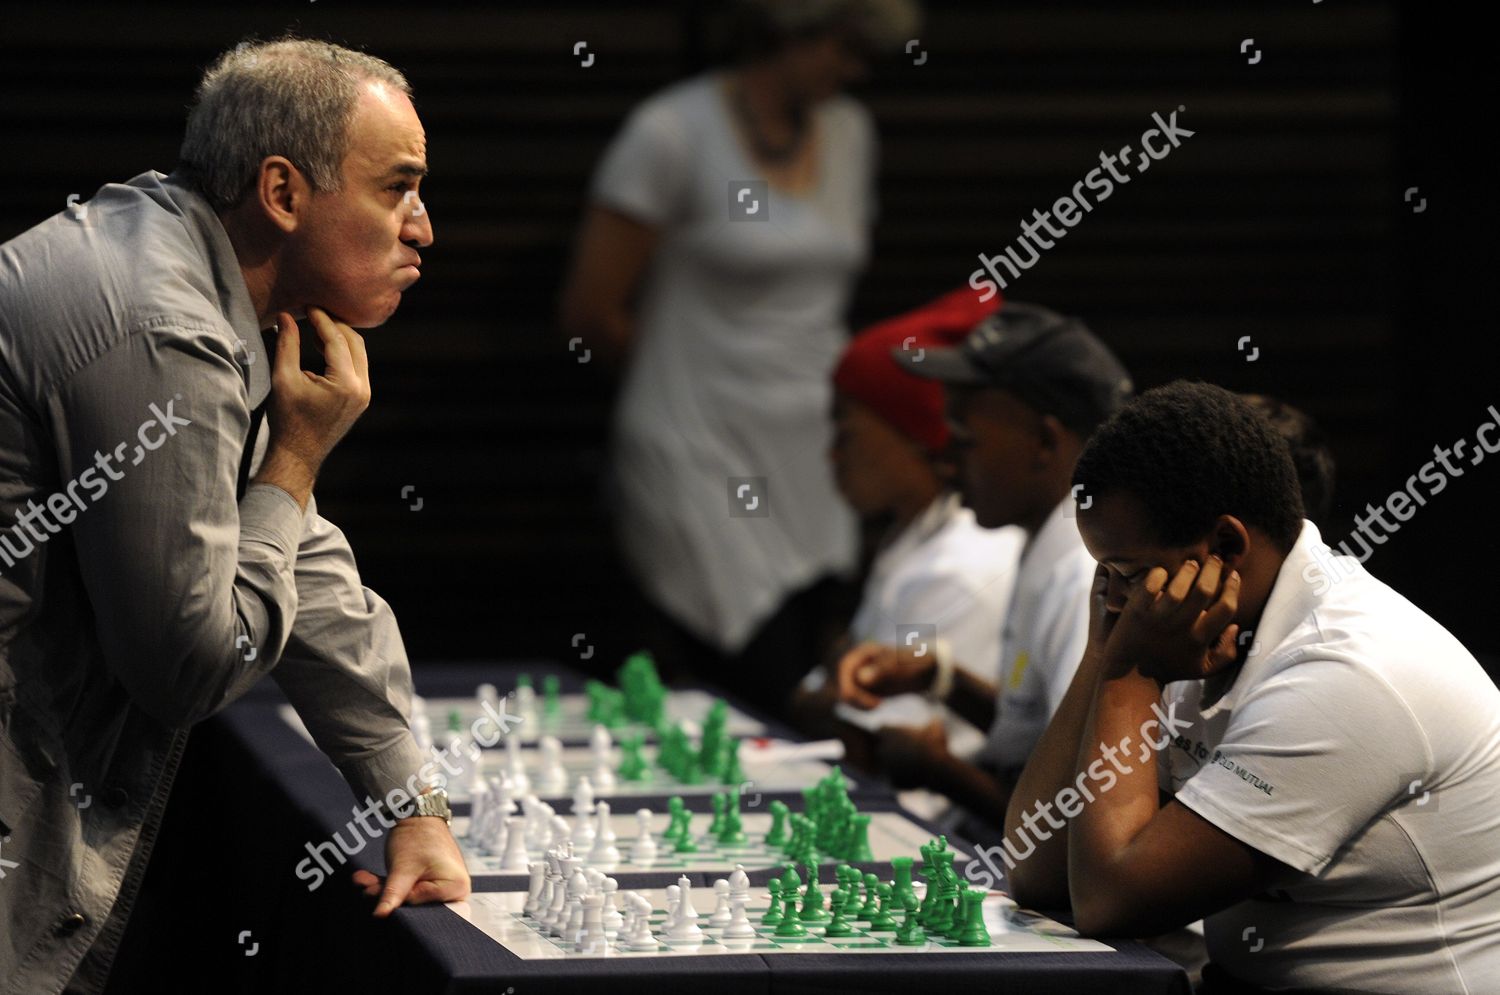 garry kasparov chess school